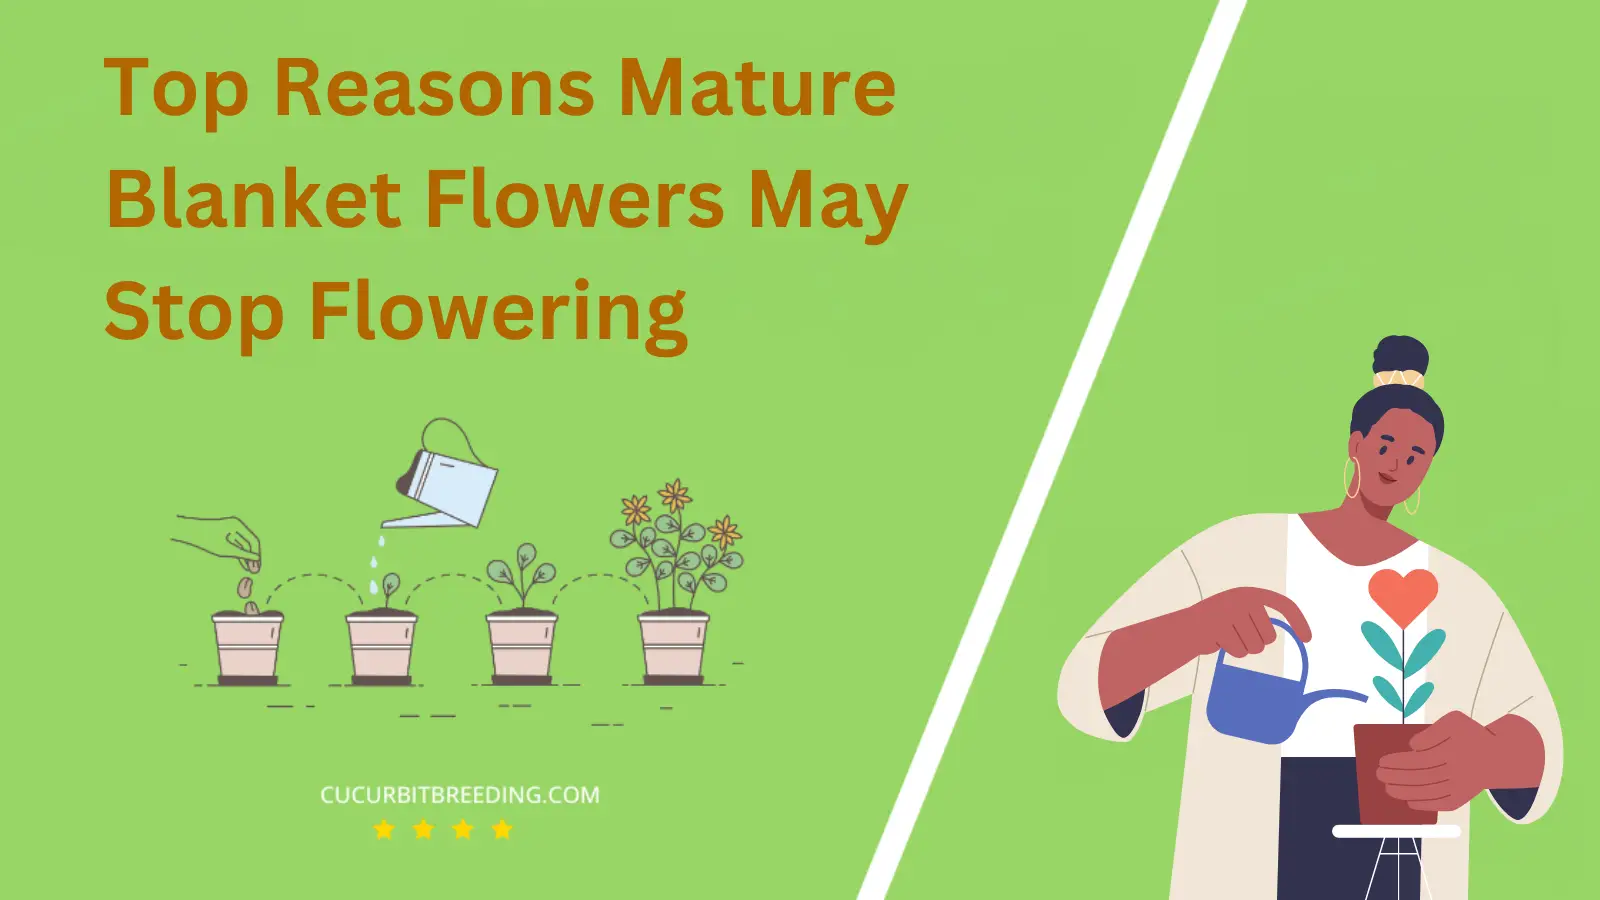 Top Reasons Mature Blanket Flowers May Stop Flowering